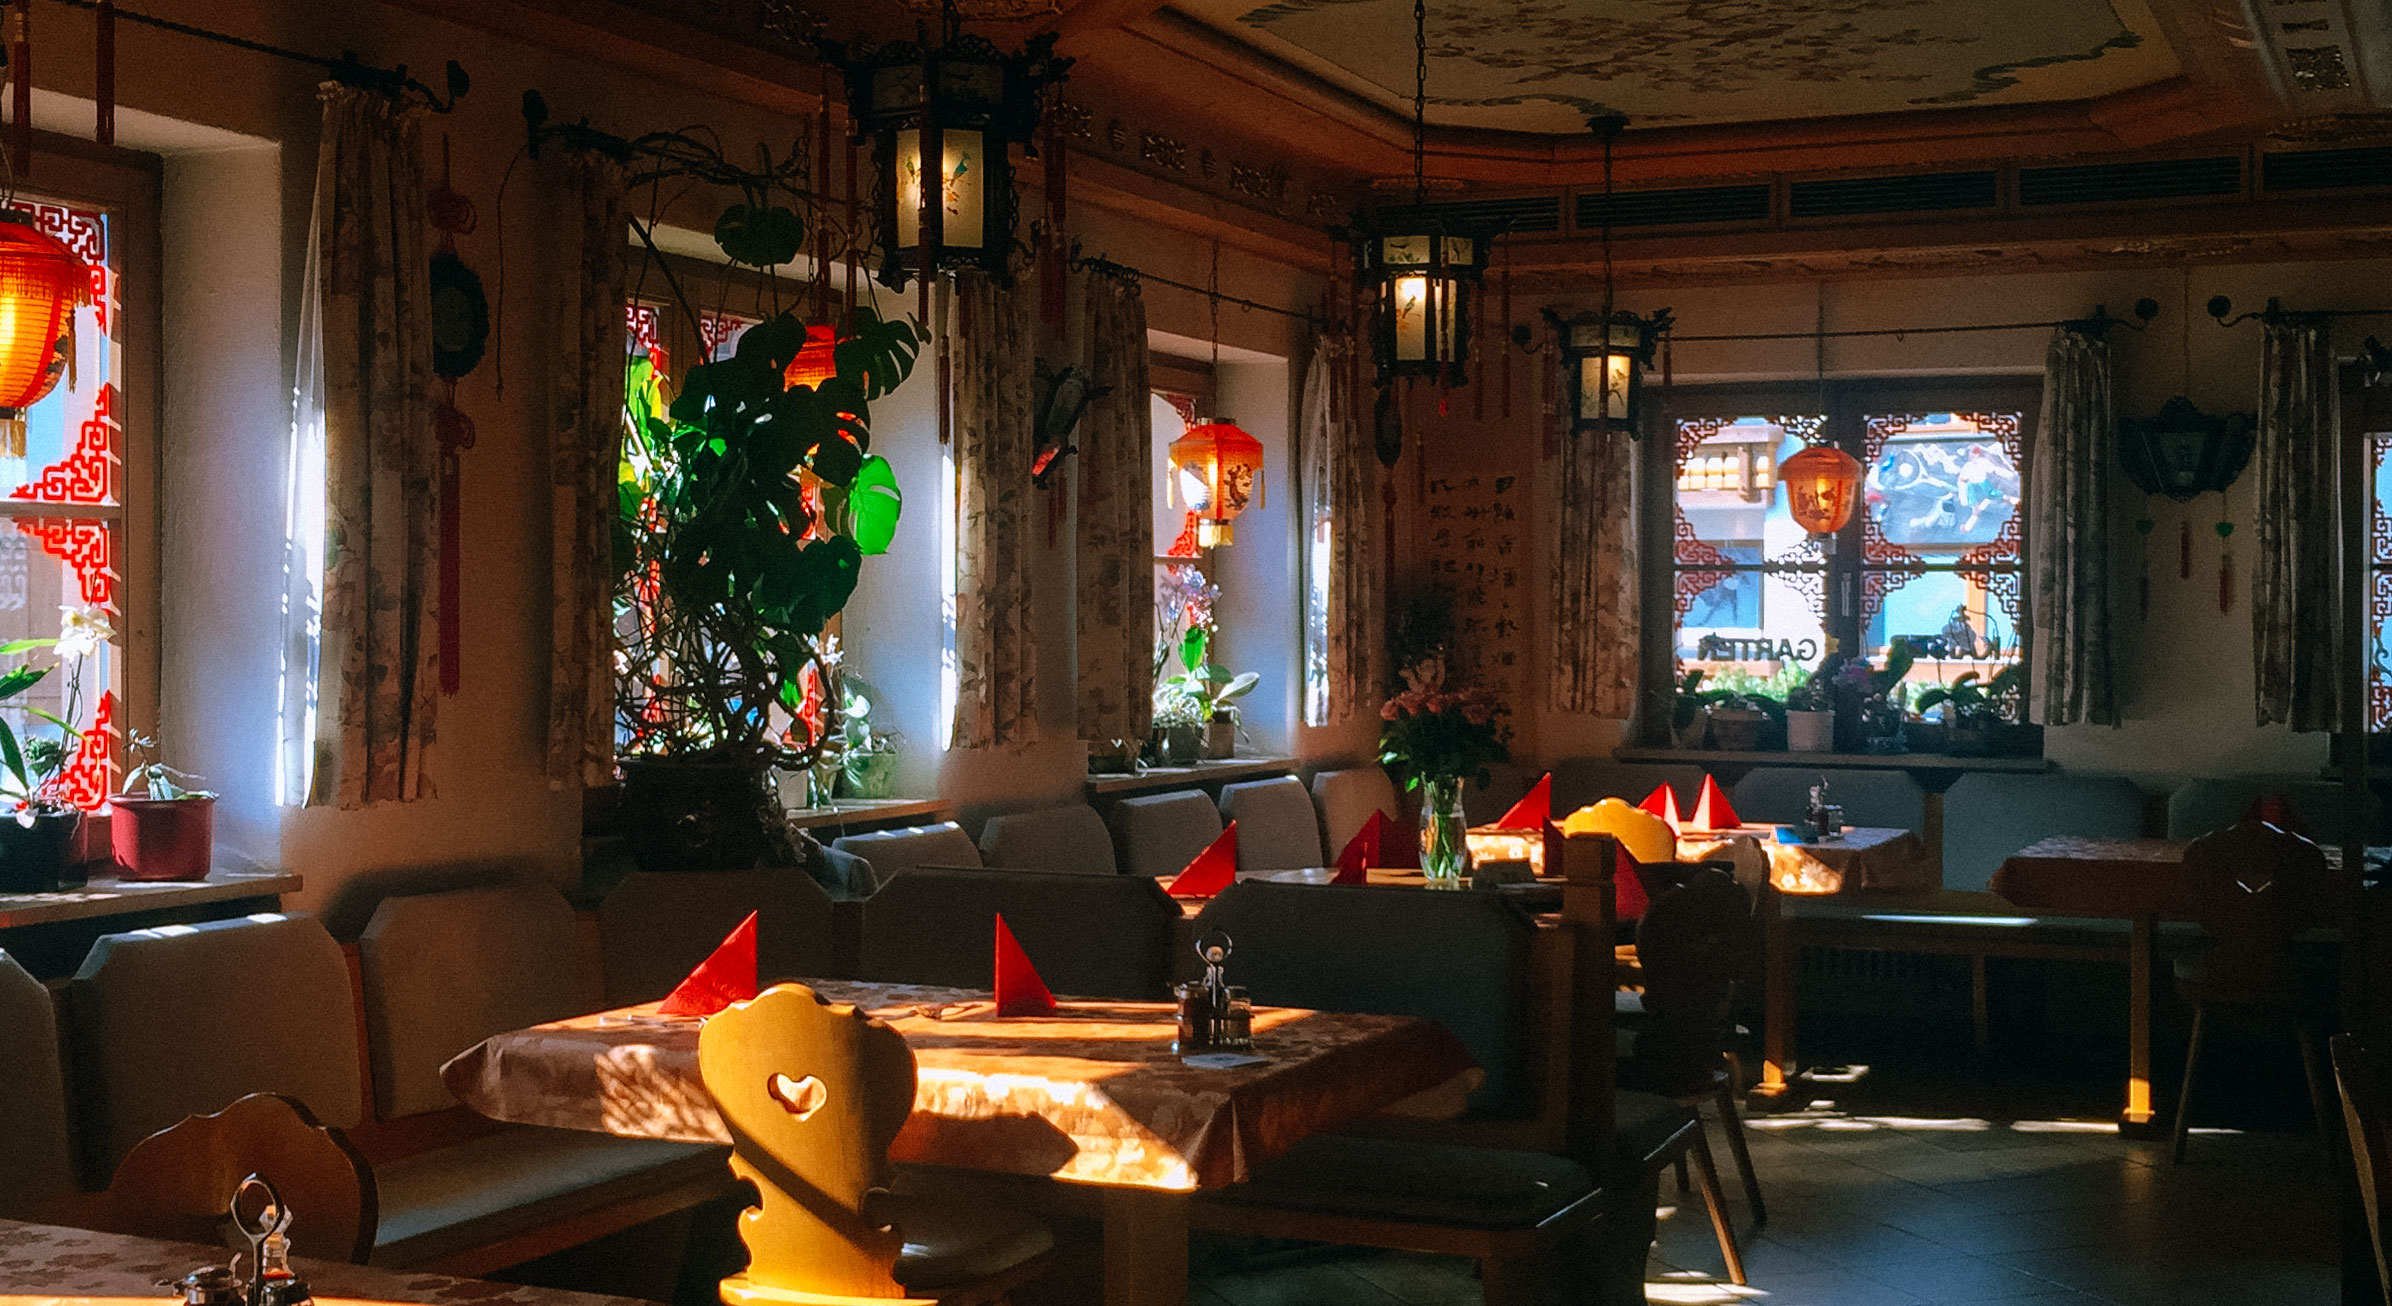 China Restaurant Kaiser Garten in Oberstdorf Allg 228 u Ein kulinarisches Erlebnis aus Fernost in 